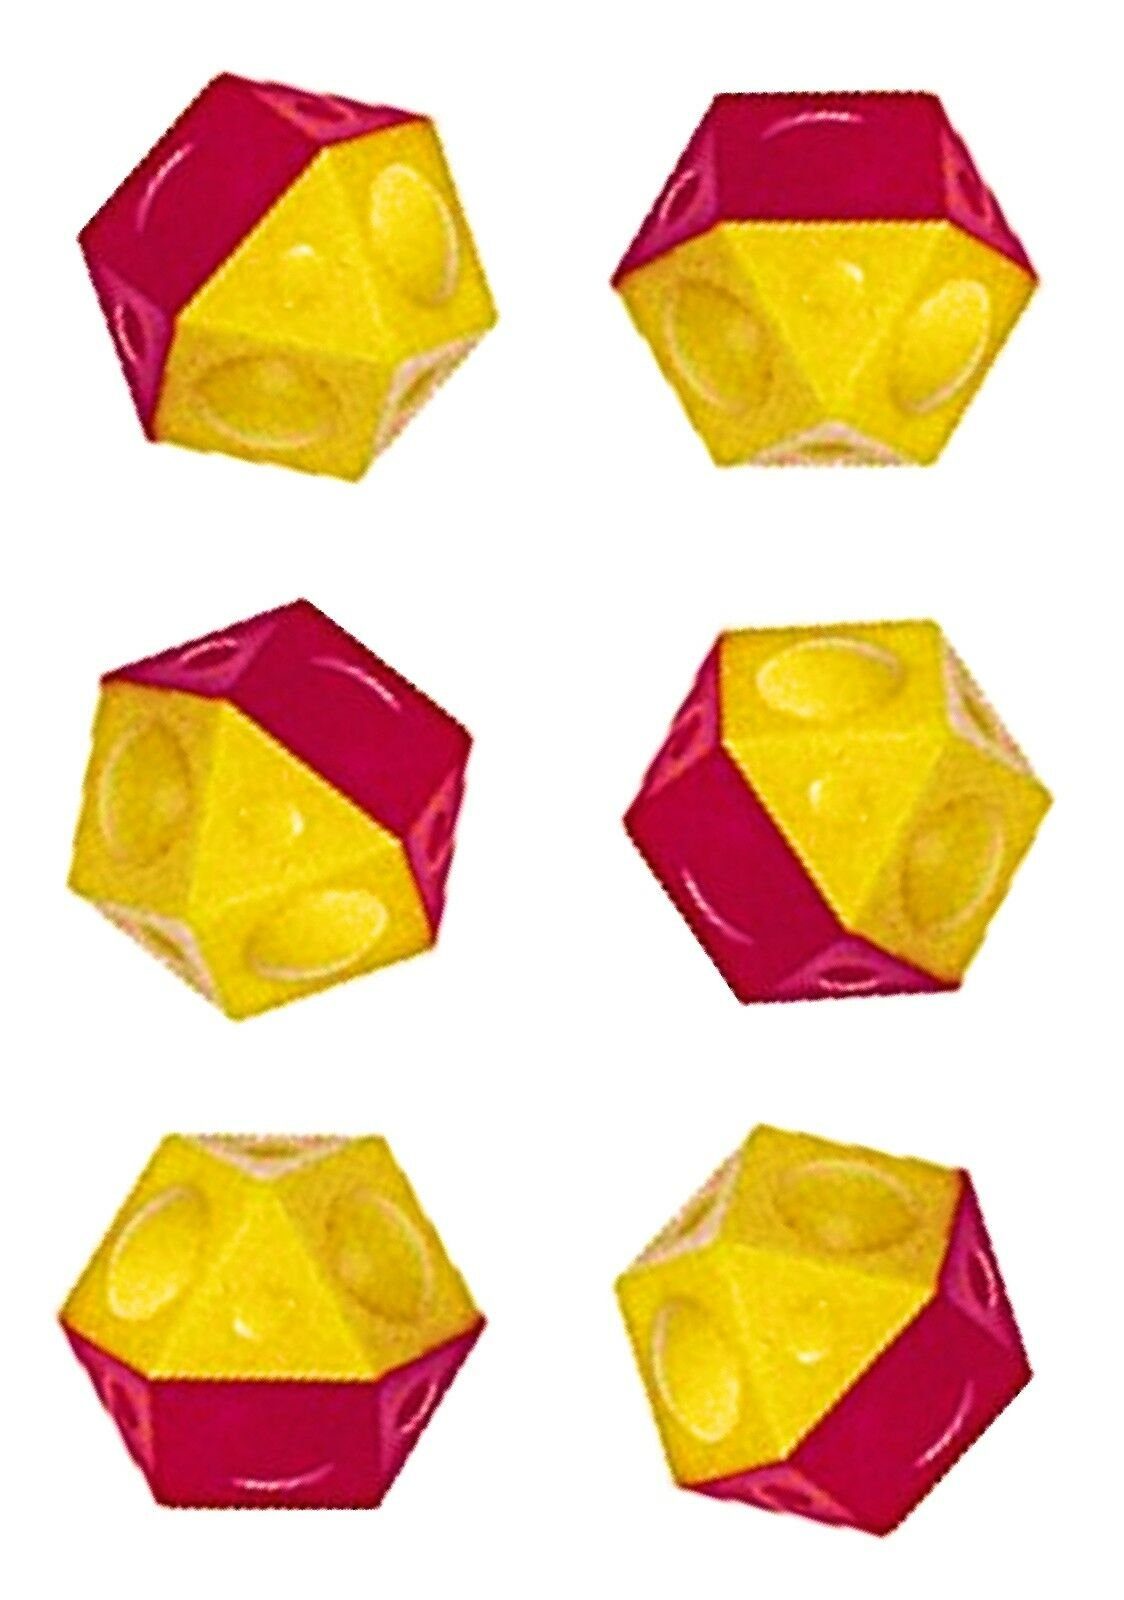 Gelb-rote Ersatz Tischfußballspiel Ball TIPP-KICK 6 x Ersatzbälle Bälle Tipp-Kick Fußbälle